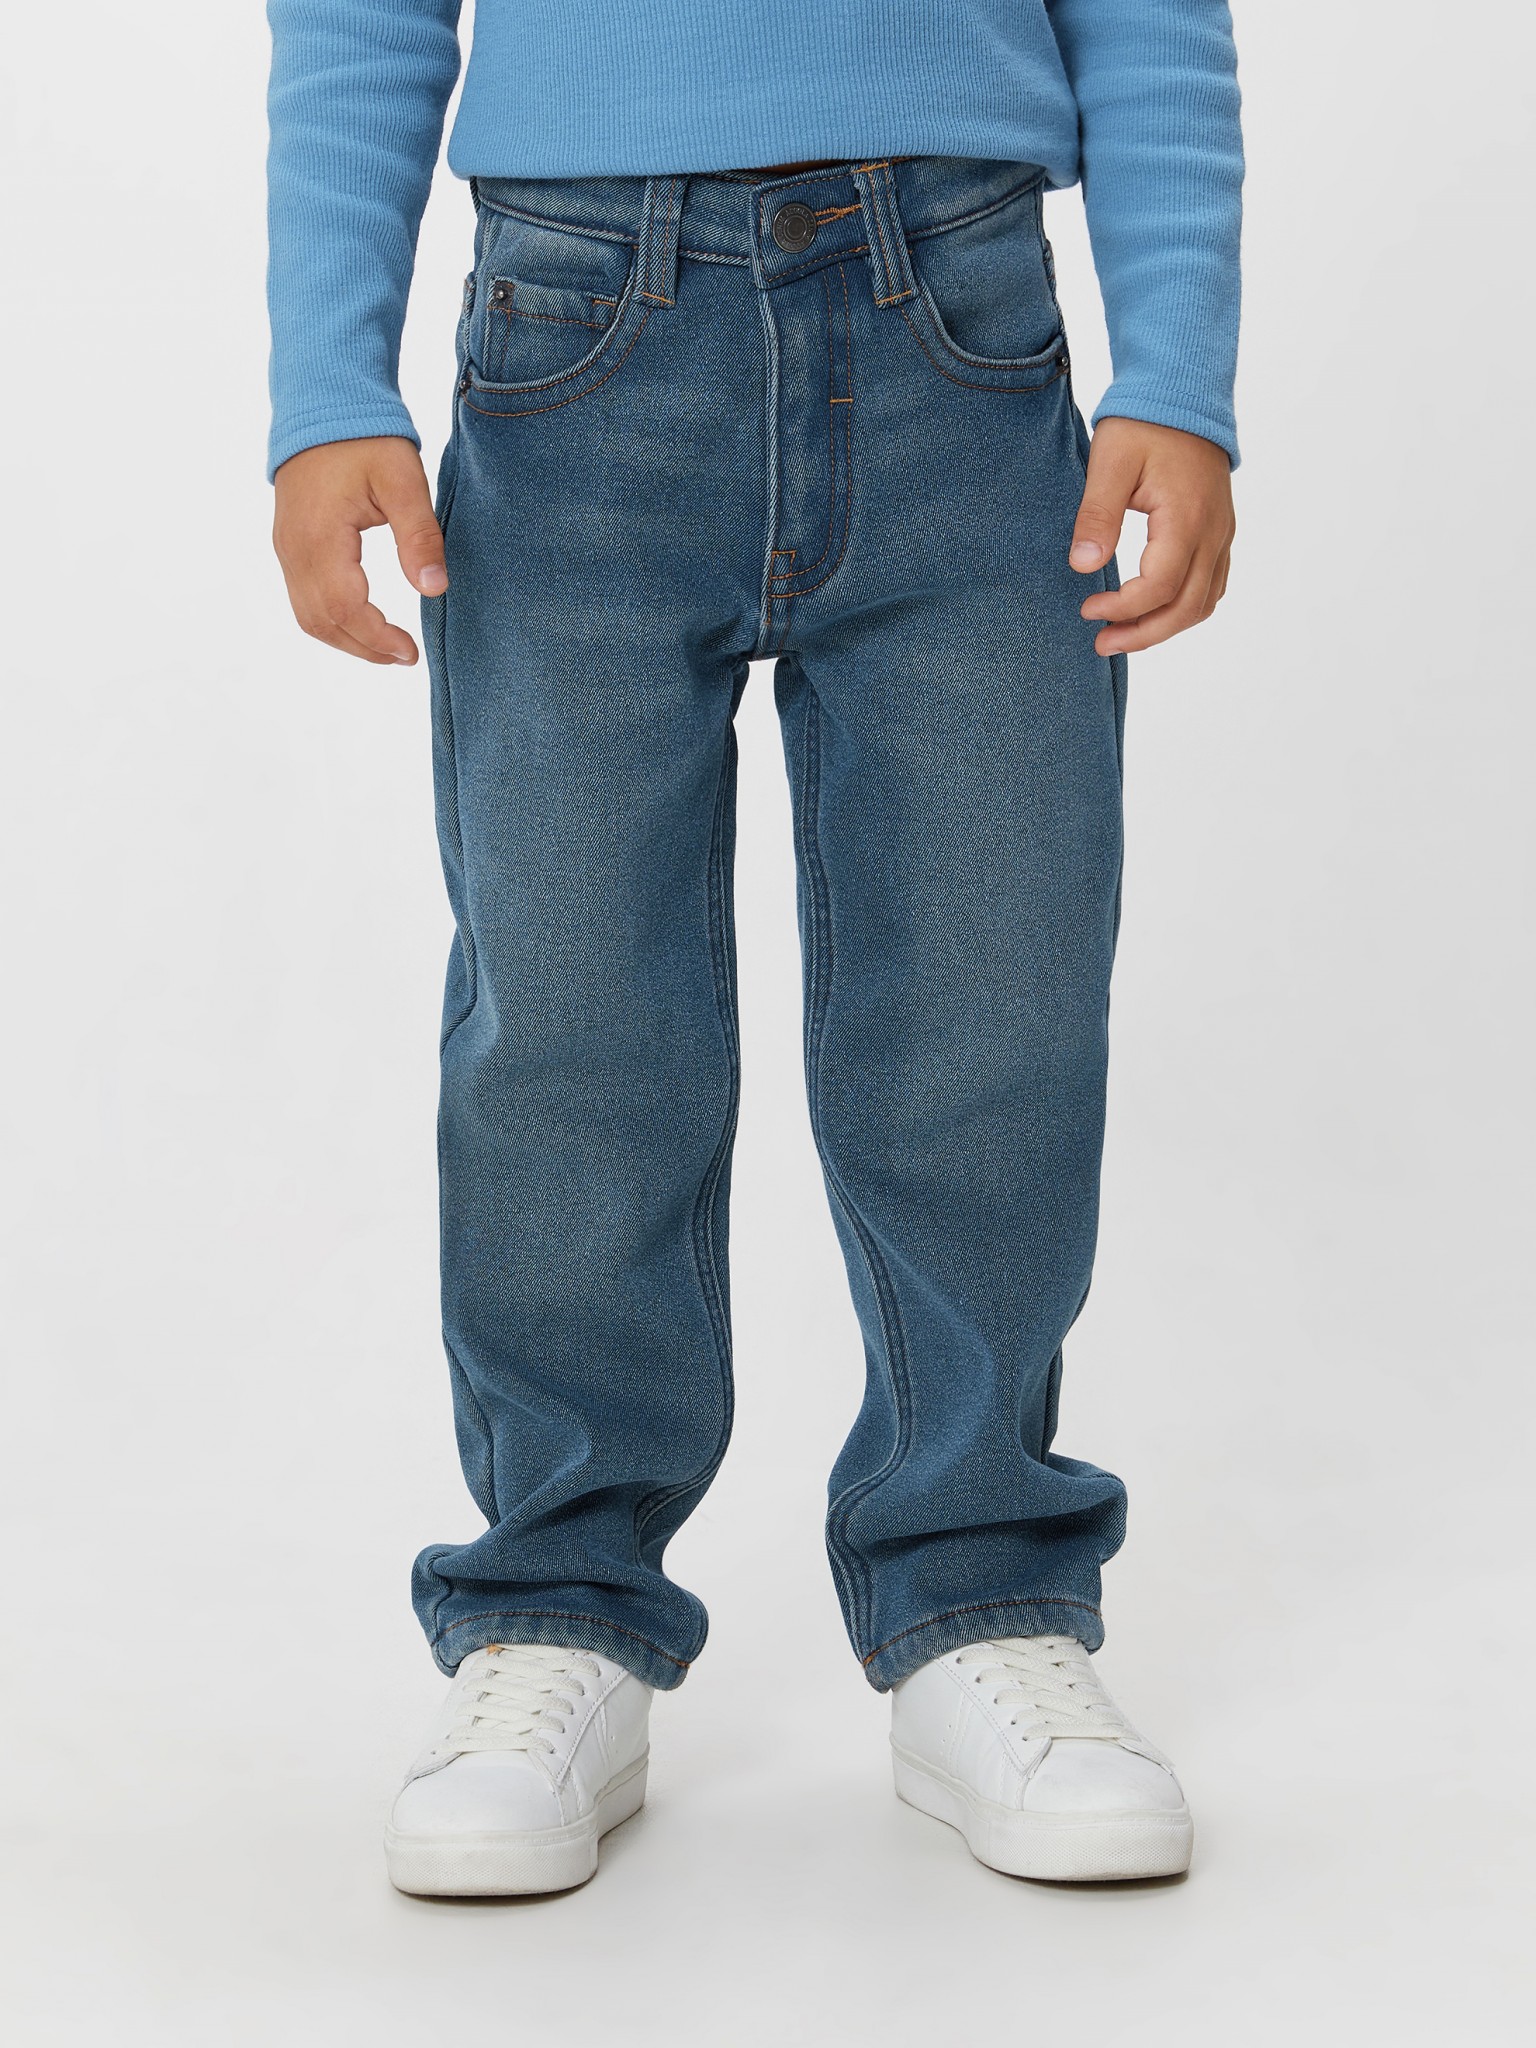 Джинсы детские Acoola 20120440088, синий, 116 синие джинсы с потертостями dsquared2 детские